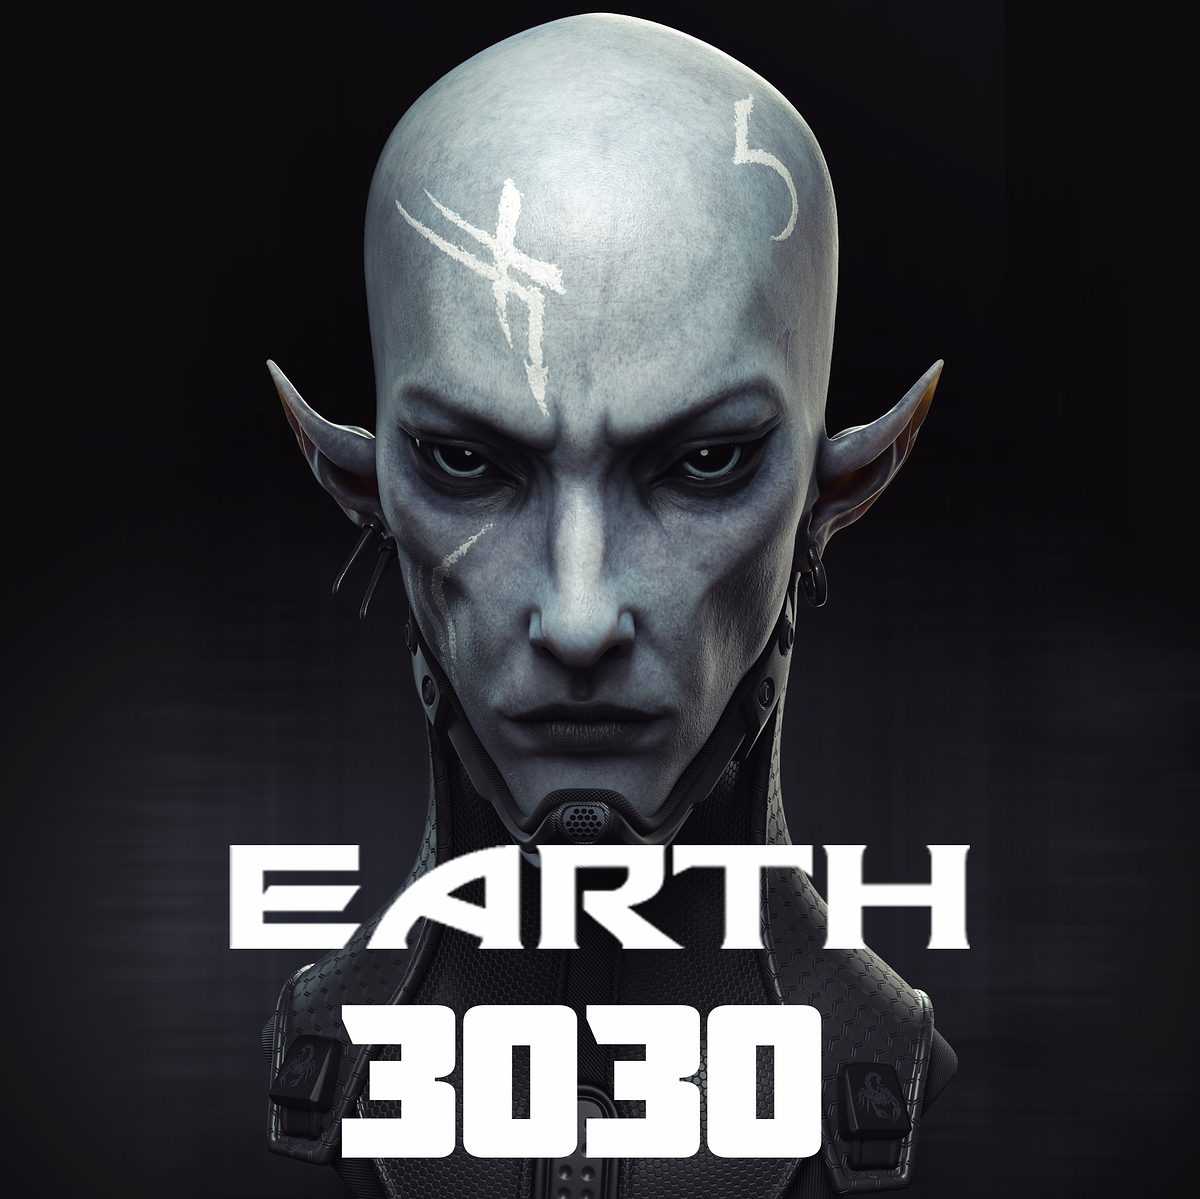 EARTH%203030_Avatar